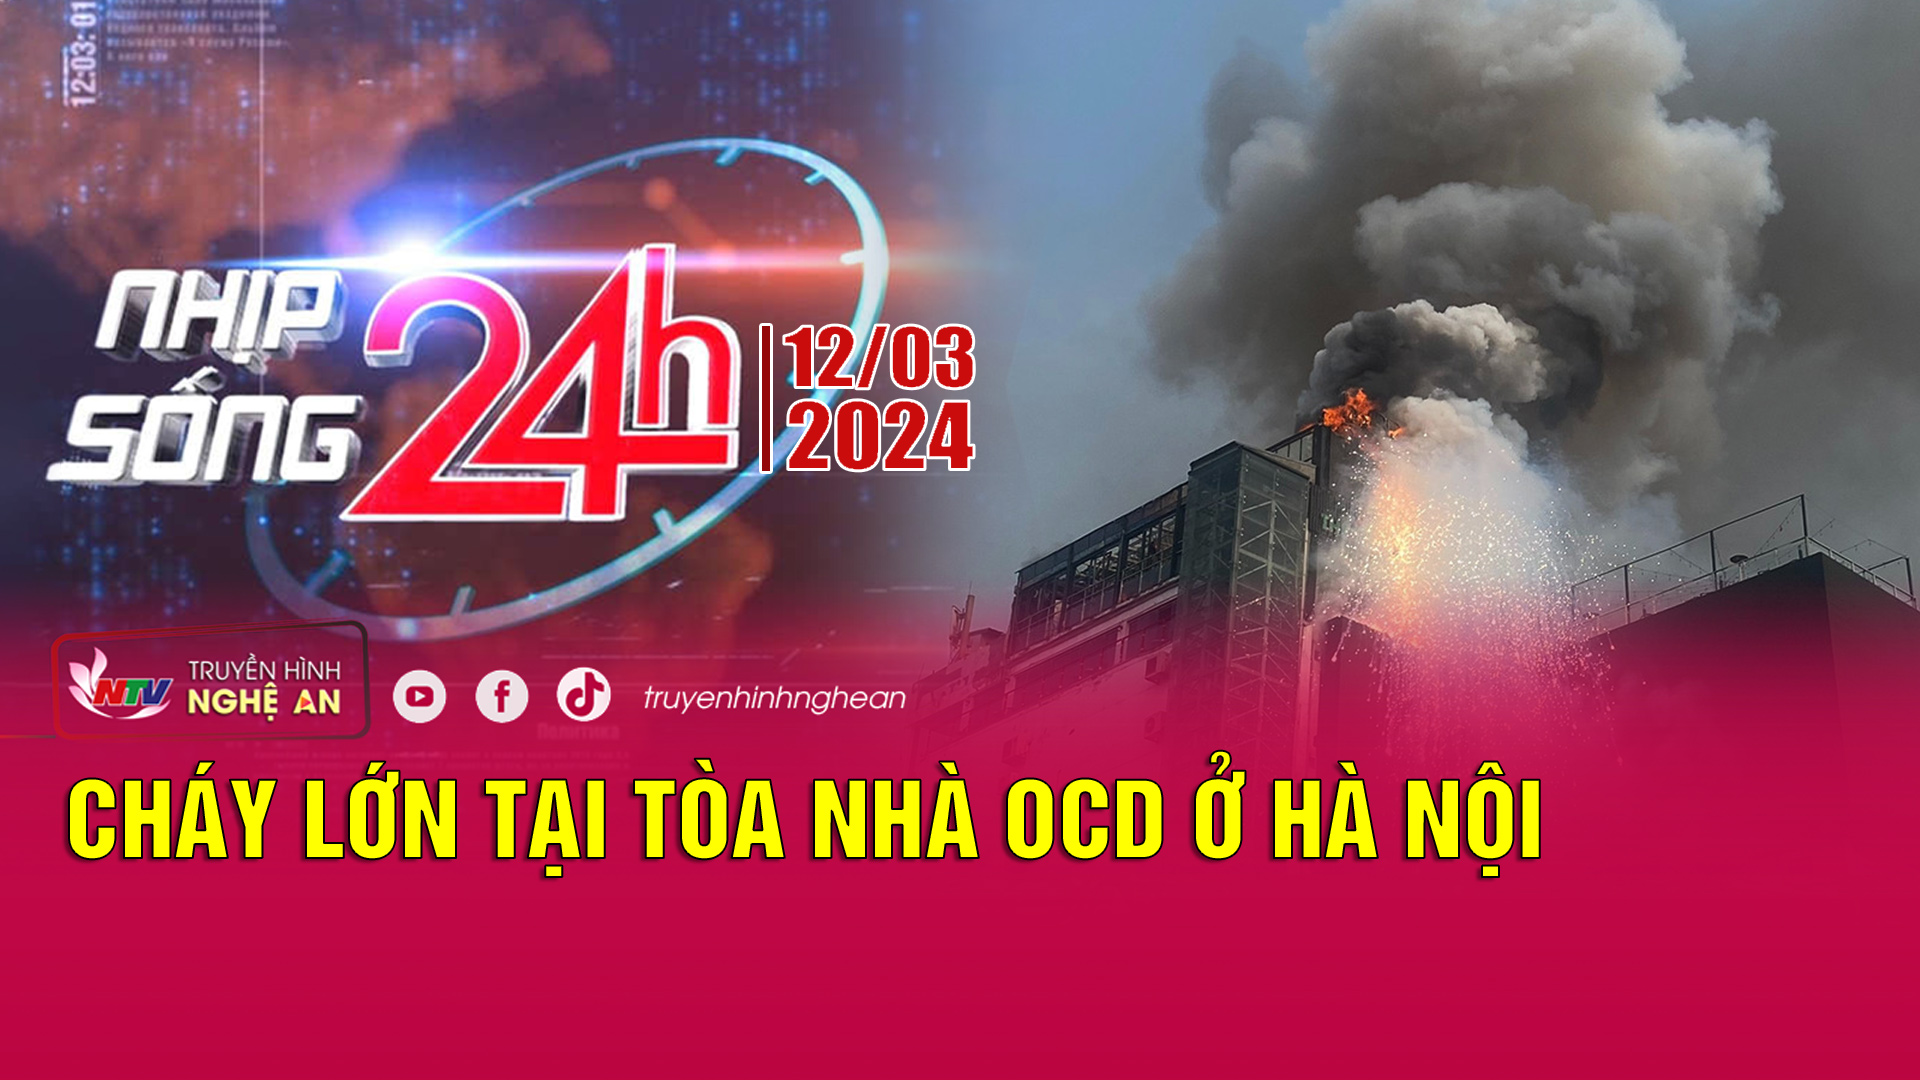 Nhịp sống 24h - 12/03/2024: Cháy lớn tại tòa nhà OCD ở Hà Nội